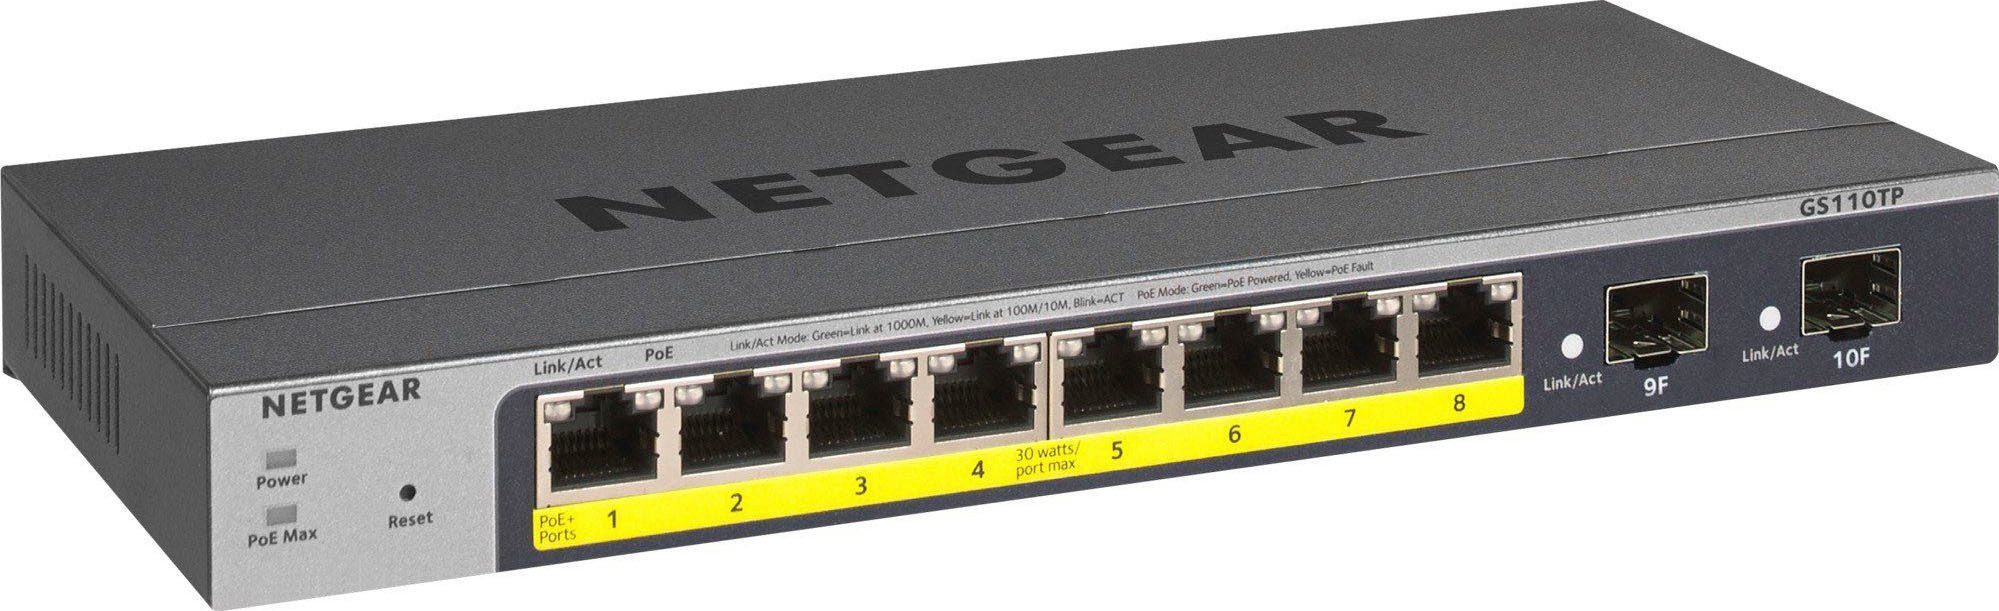 Nighthawk XR1000 WLAN-Router NETGEAR